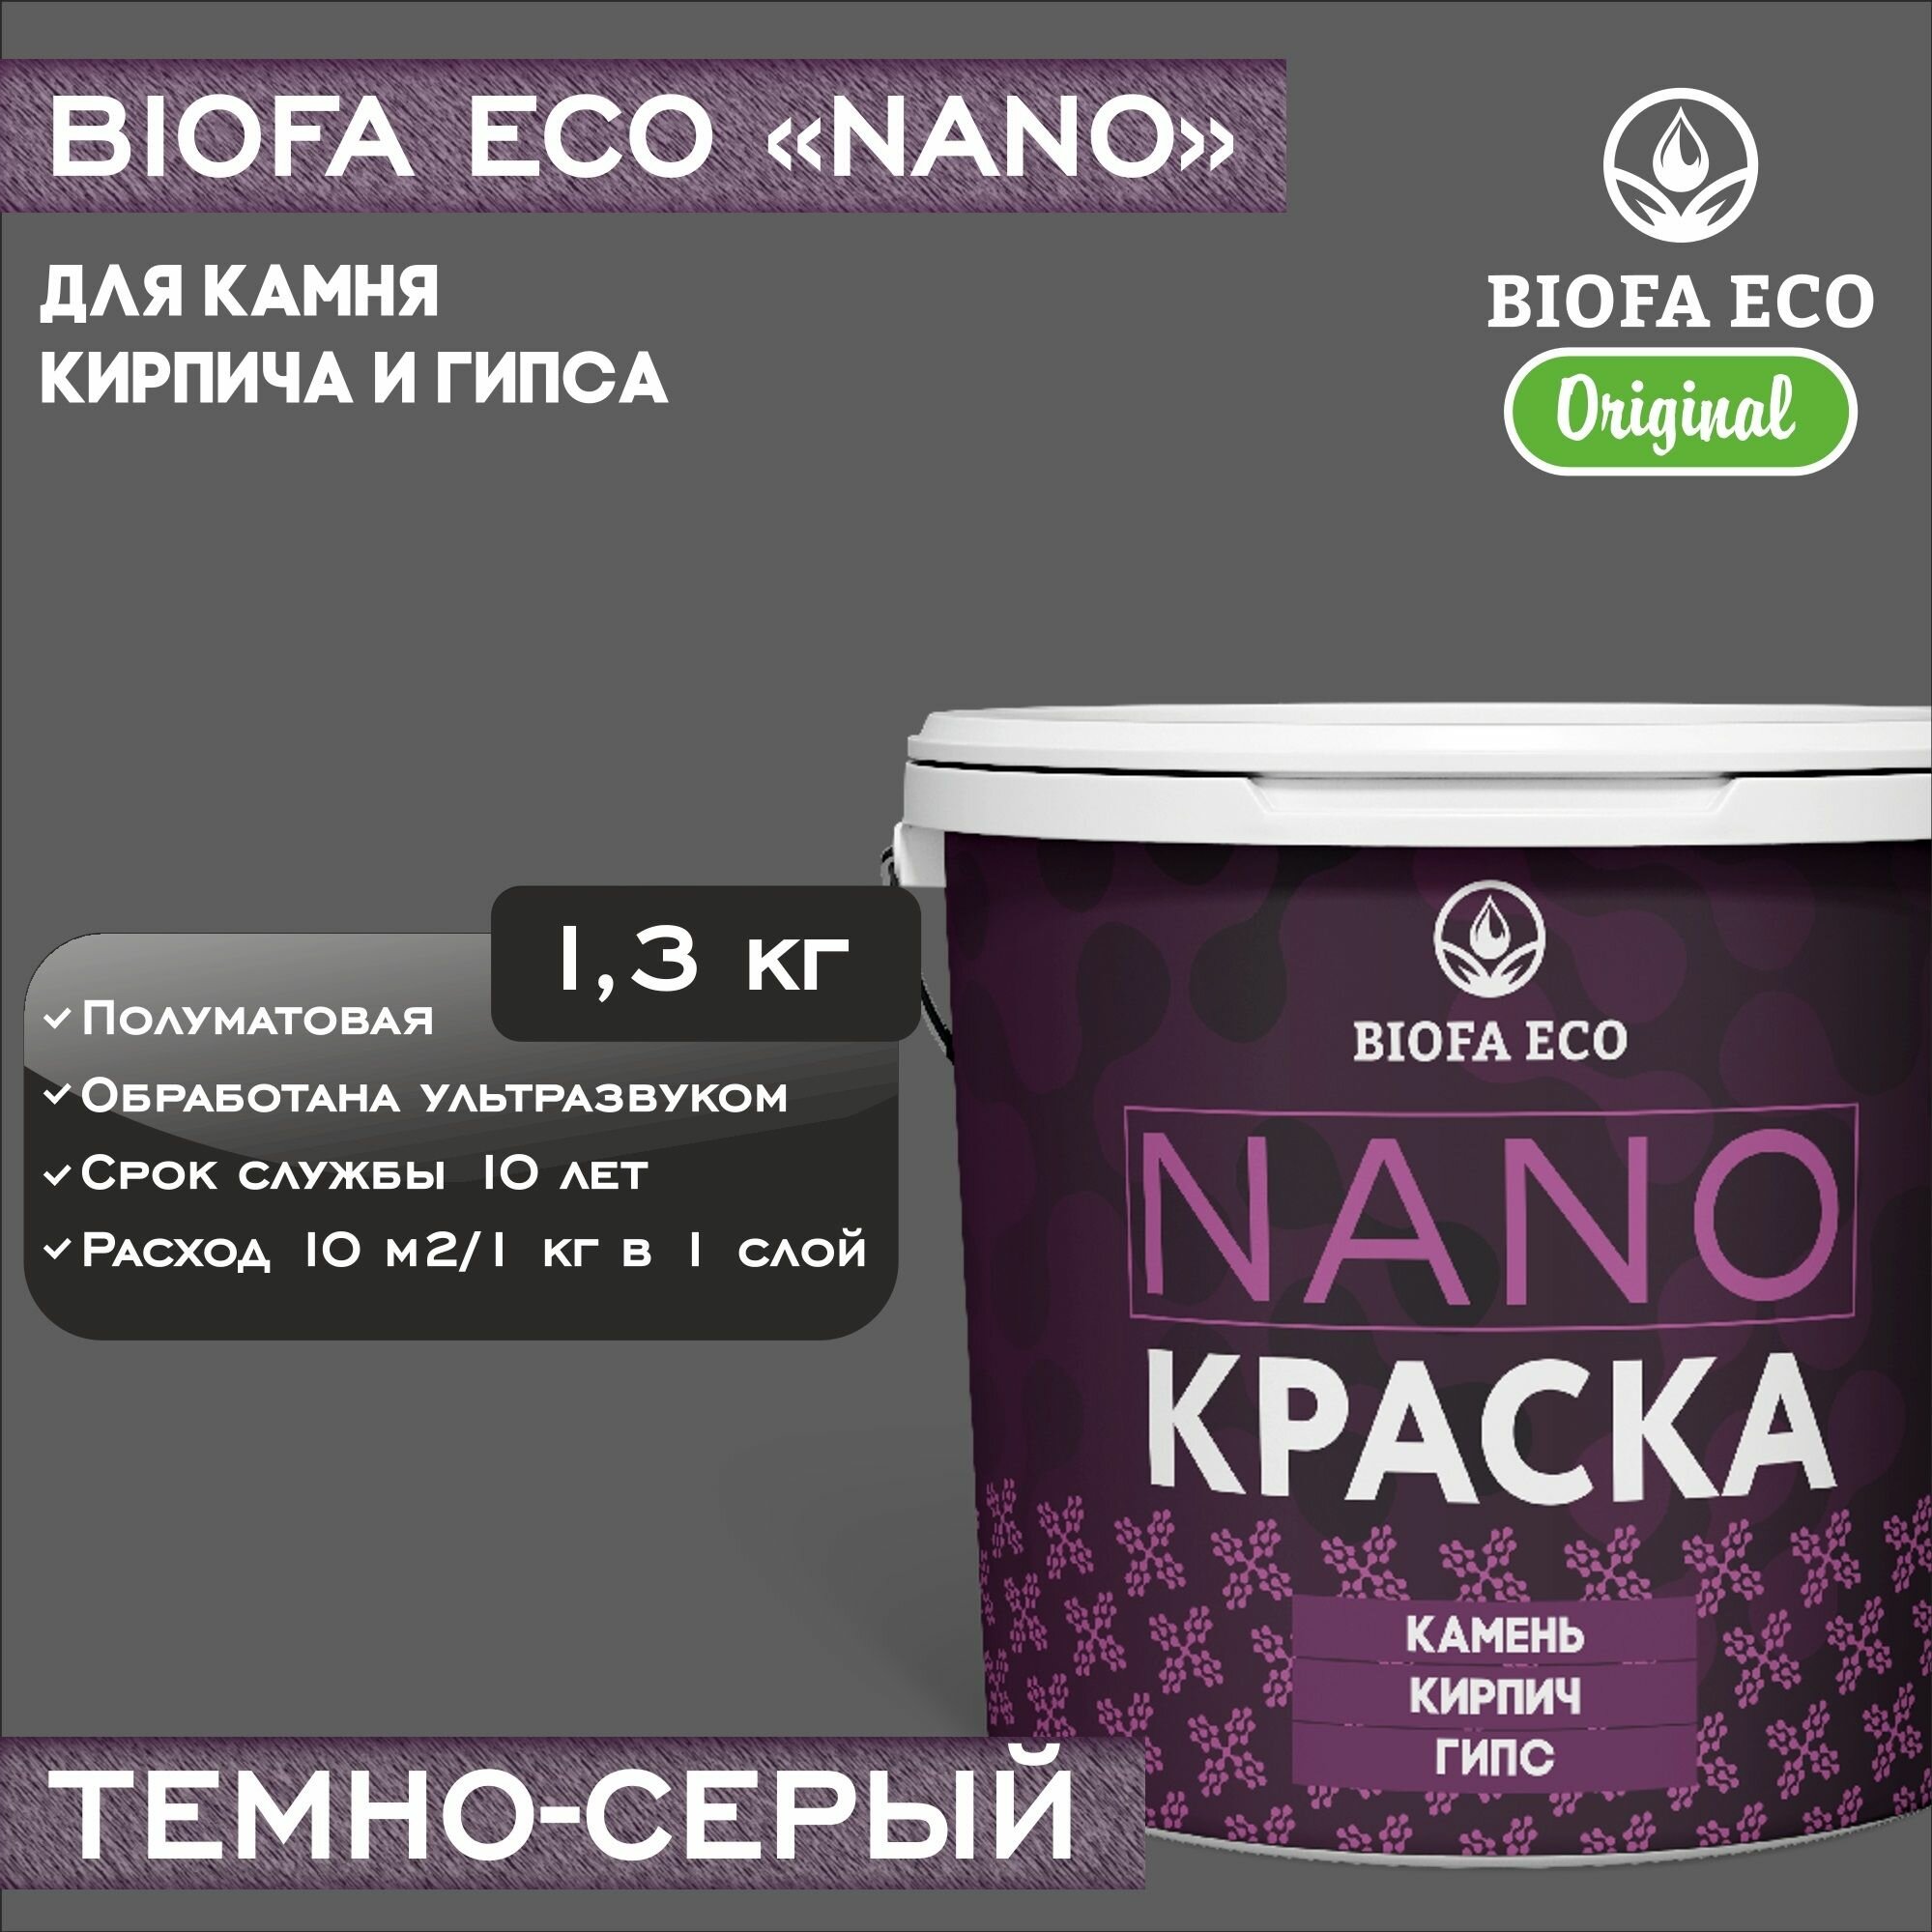 Краска BIOFA ECO NANO для камня, кирпича и гипса, адгезионная, полуматовая, цвет темно-серый, 1,3 кг